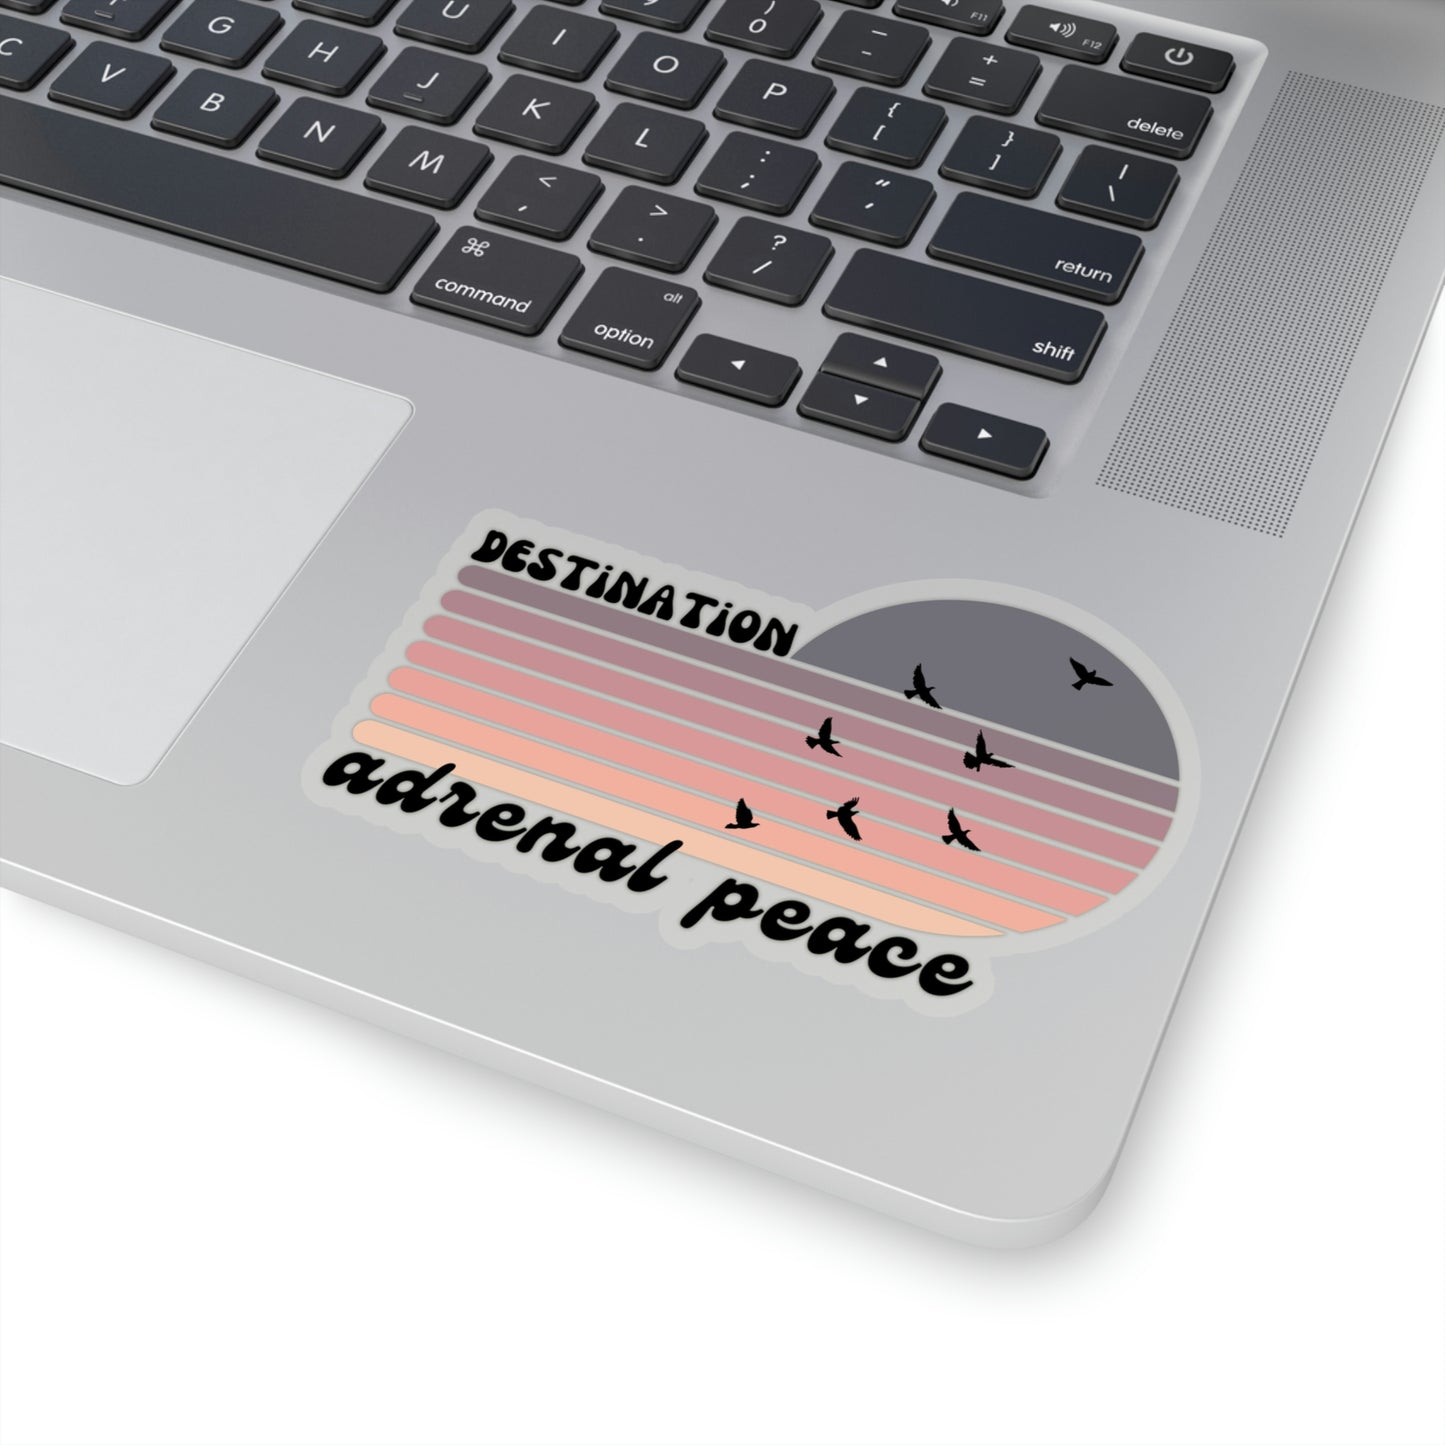 Destination: Adrenal Peace (purple gradient) Kiss-Cut Stickers